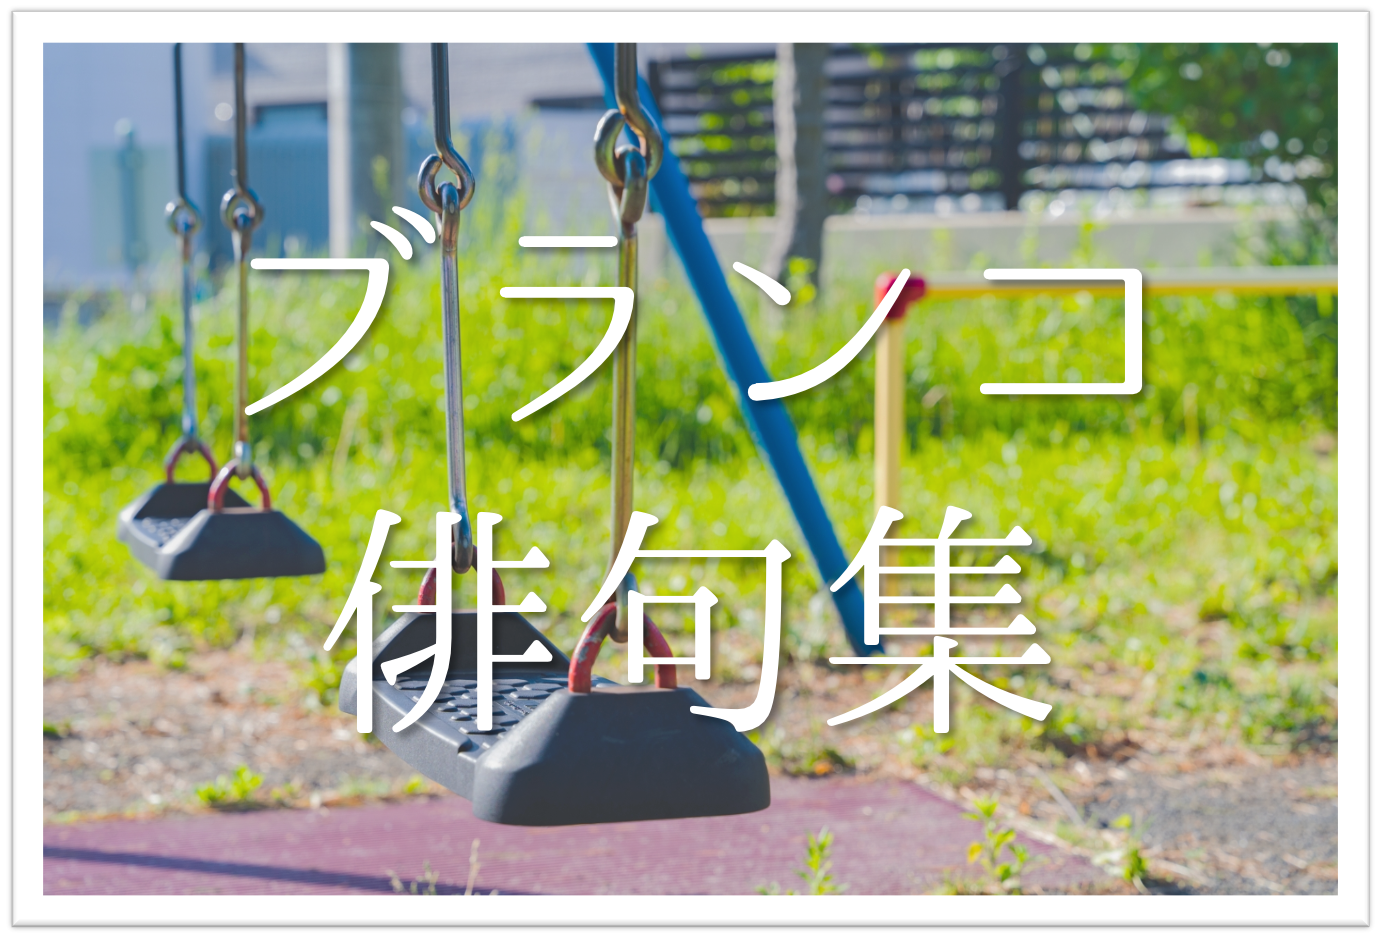 【ブランコ(鞦韆)の俳句 20選】公園の人気遊具!!春に詠みたい俳句集を紹介！